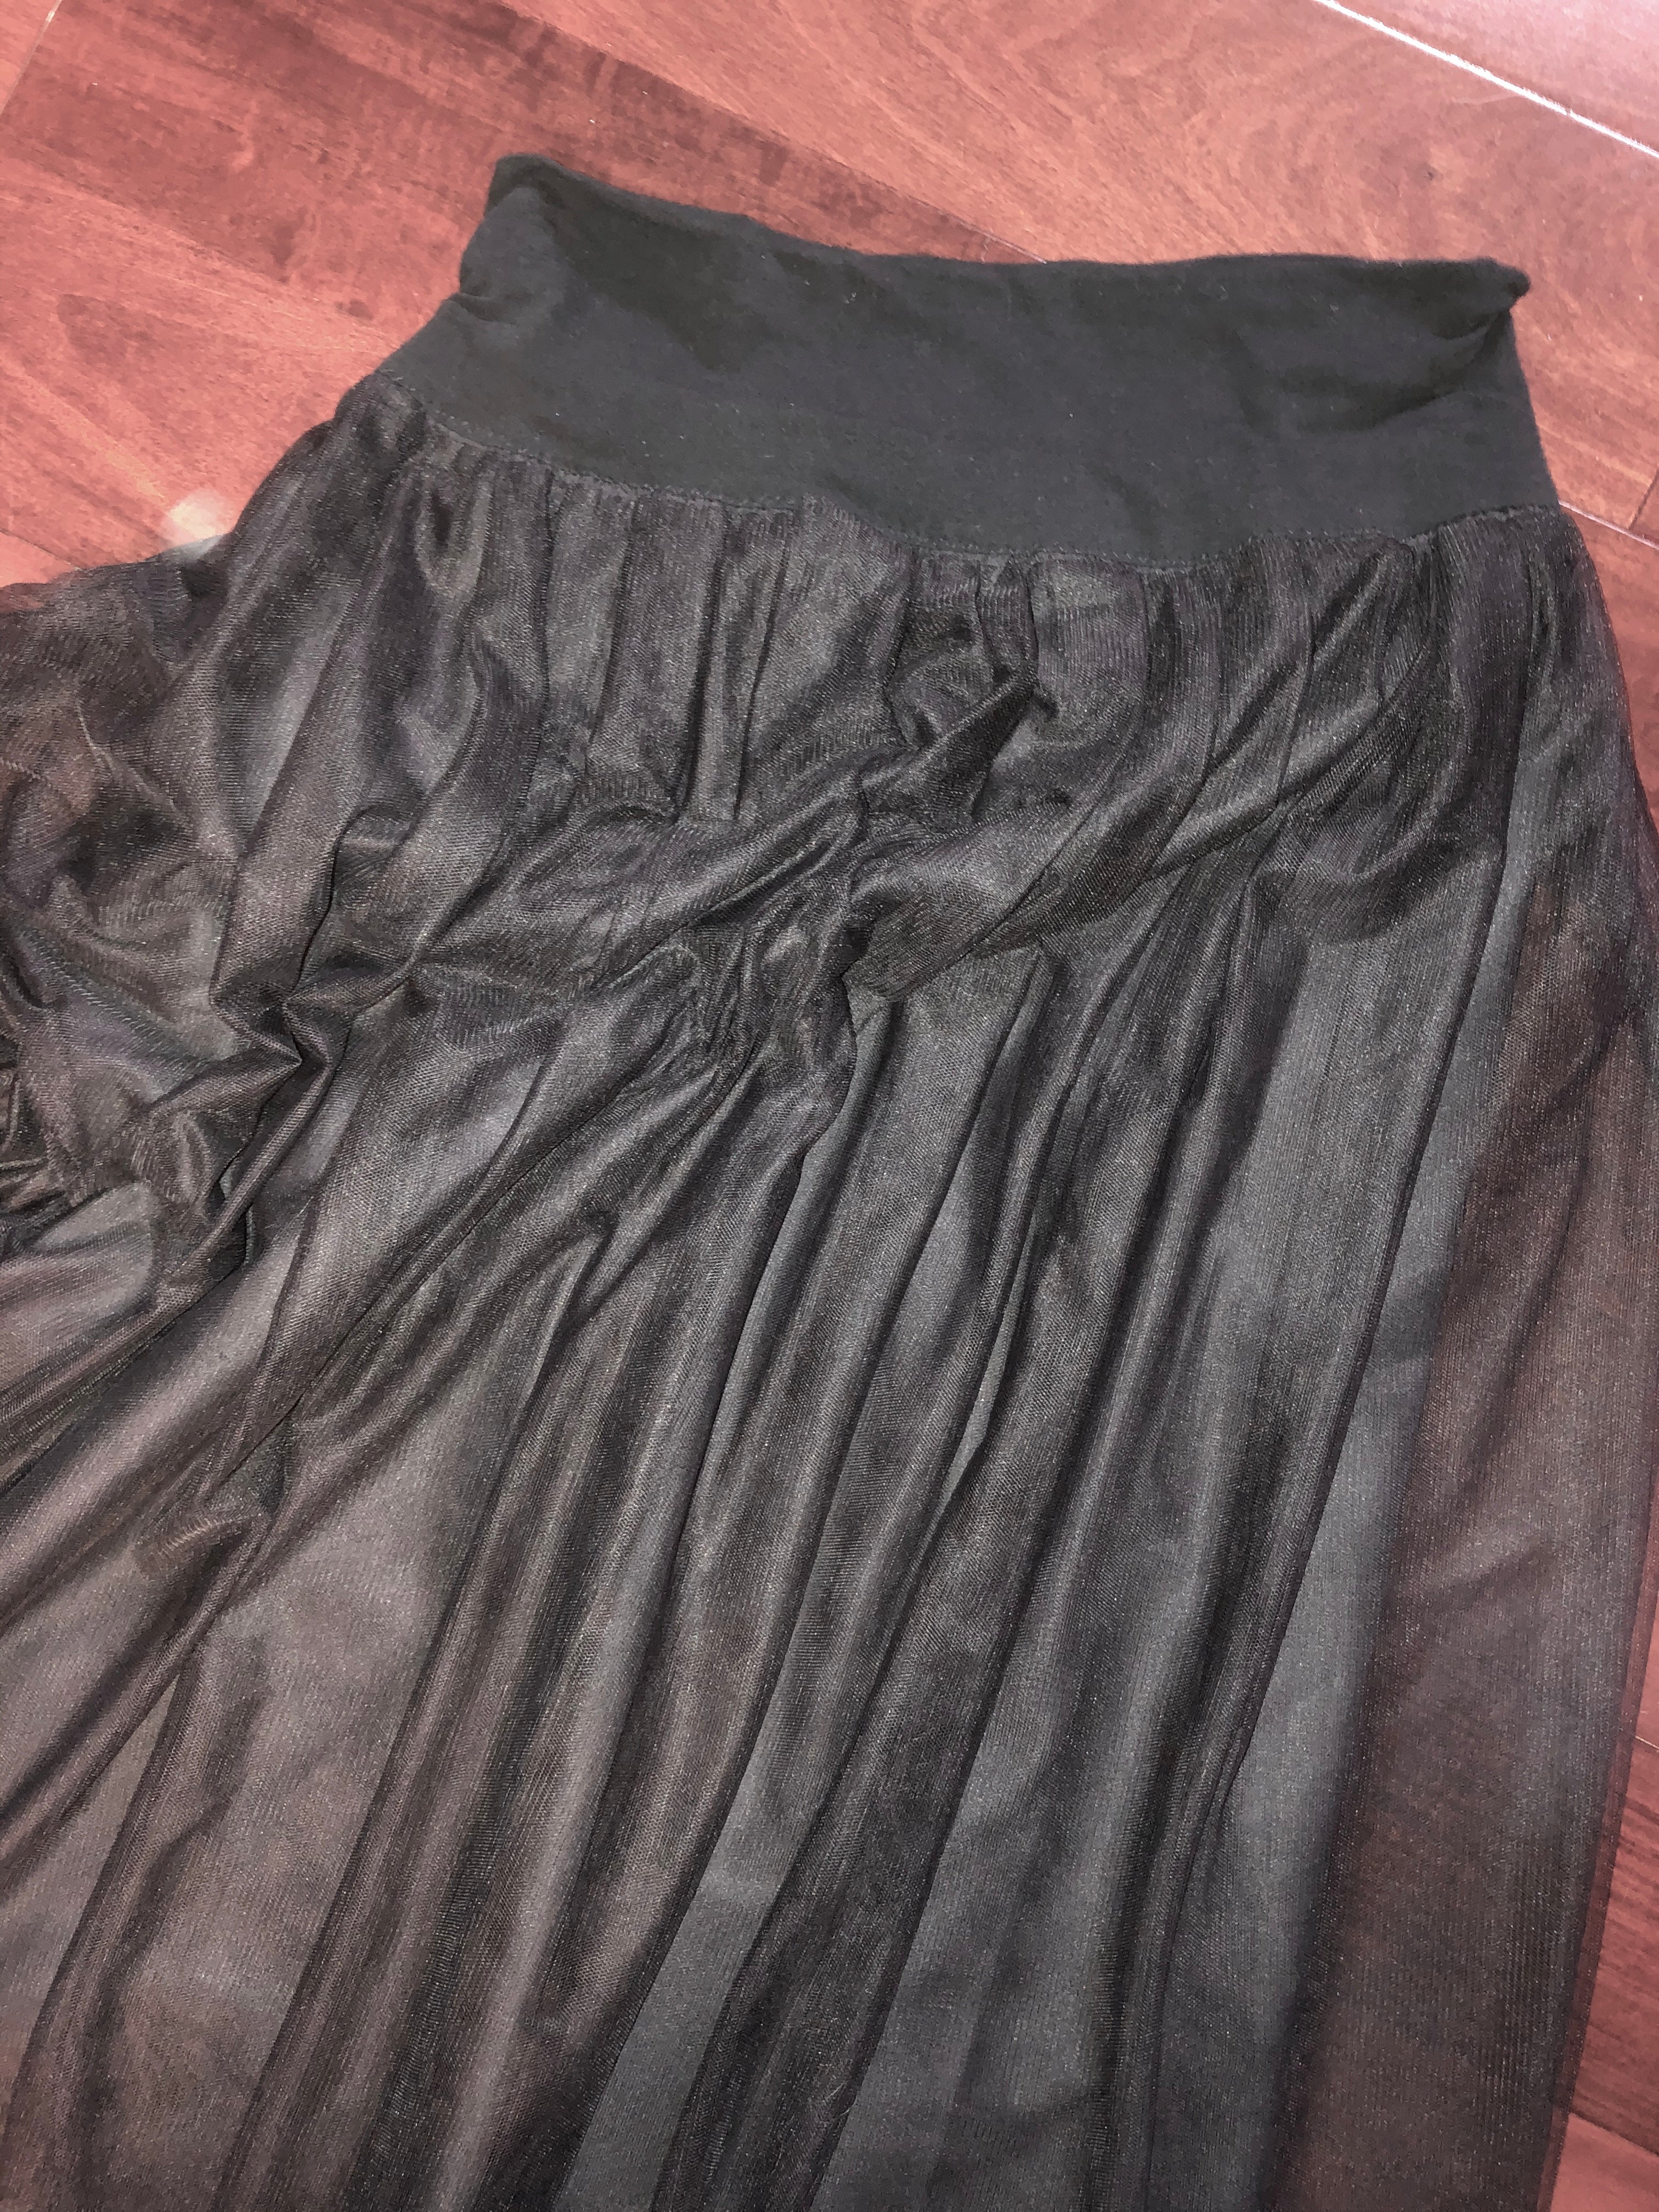 Black Skirt w/ Tulle